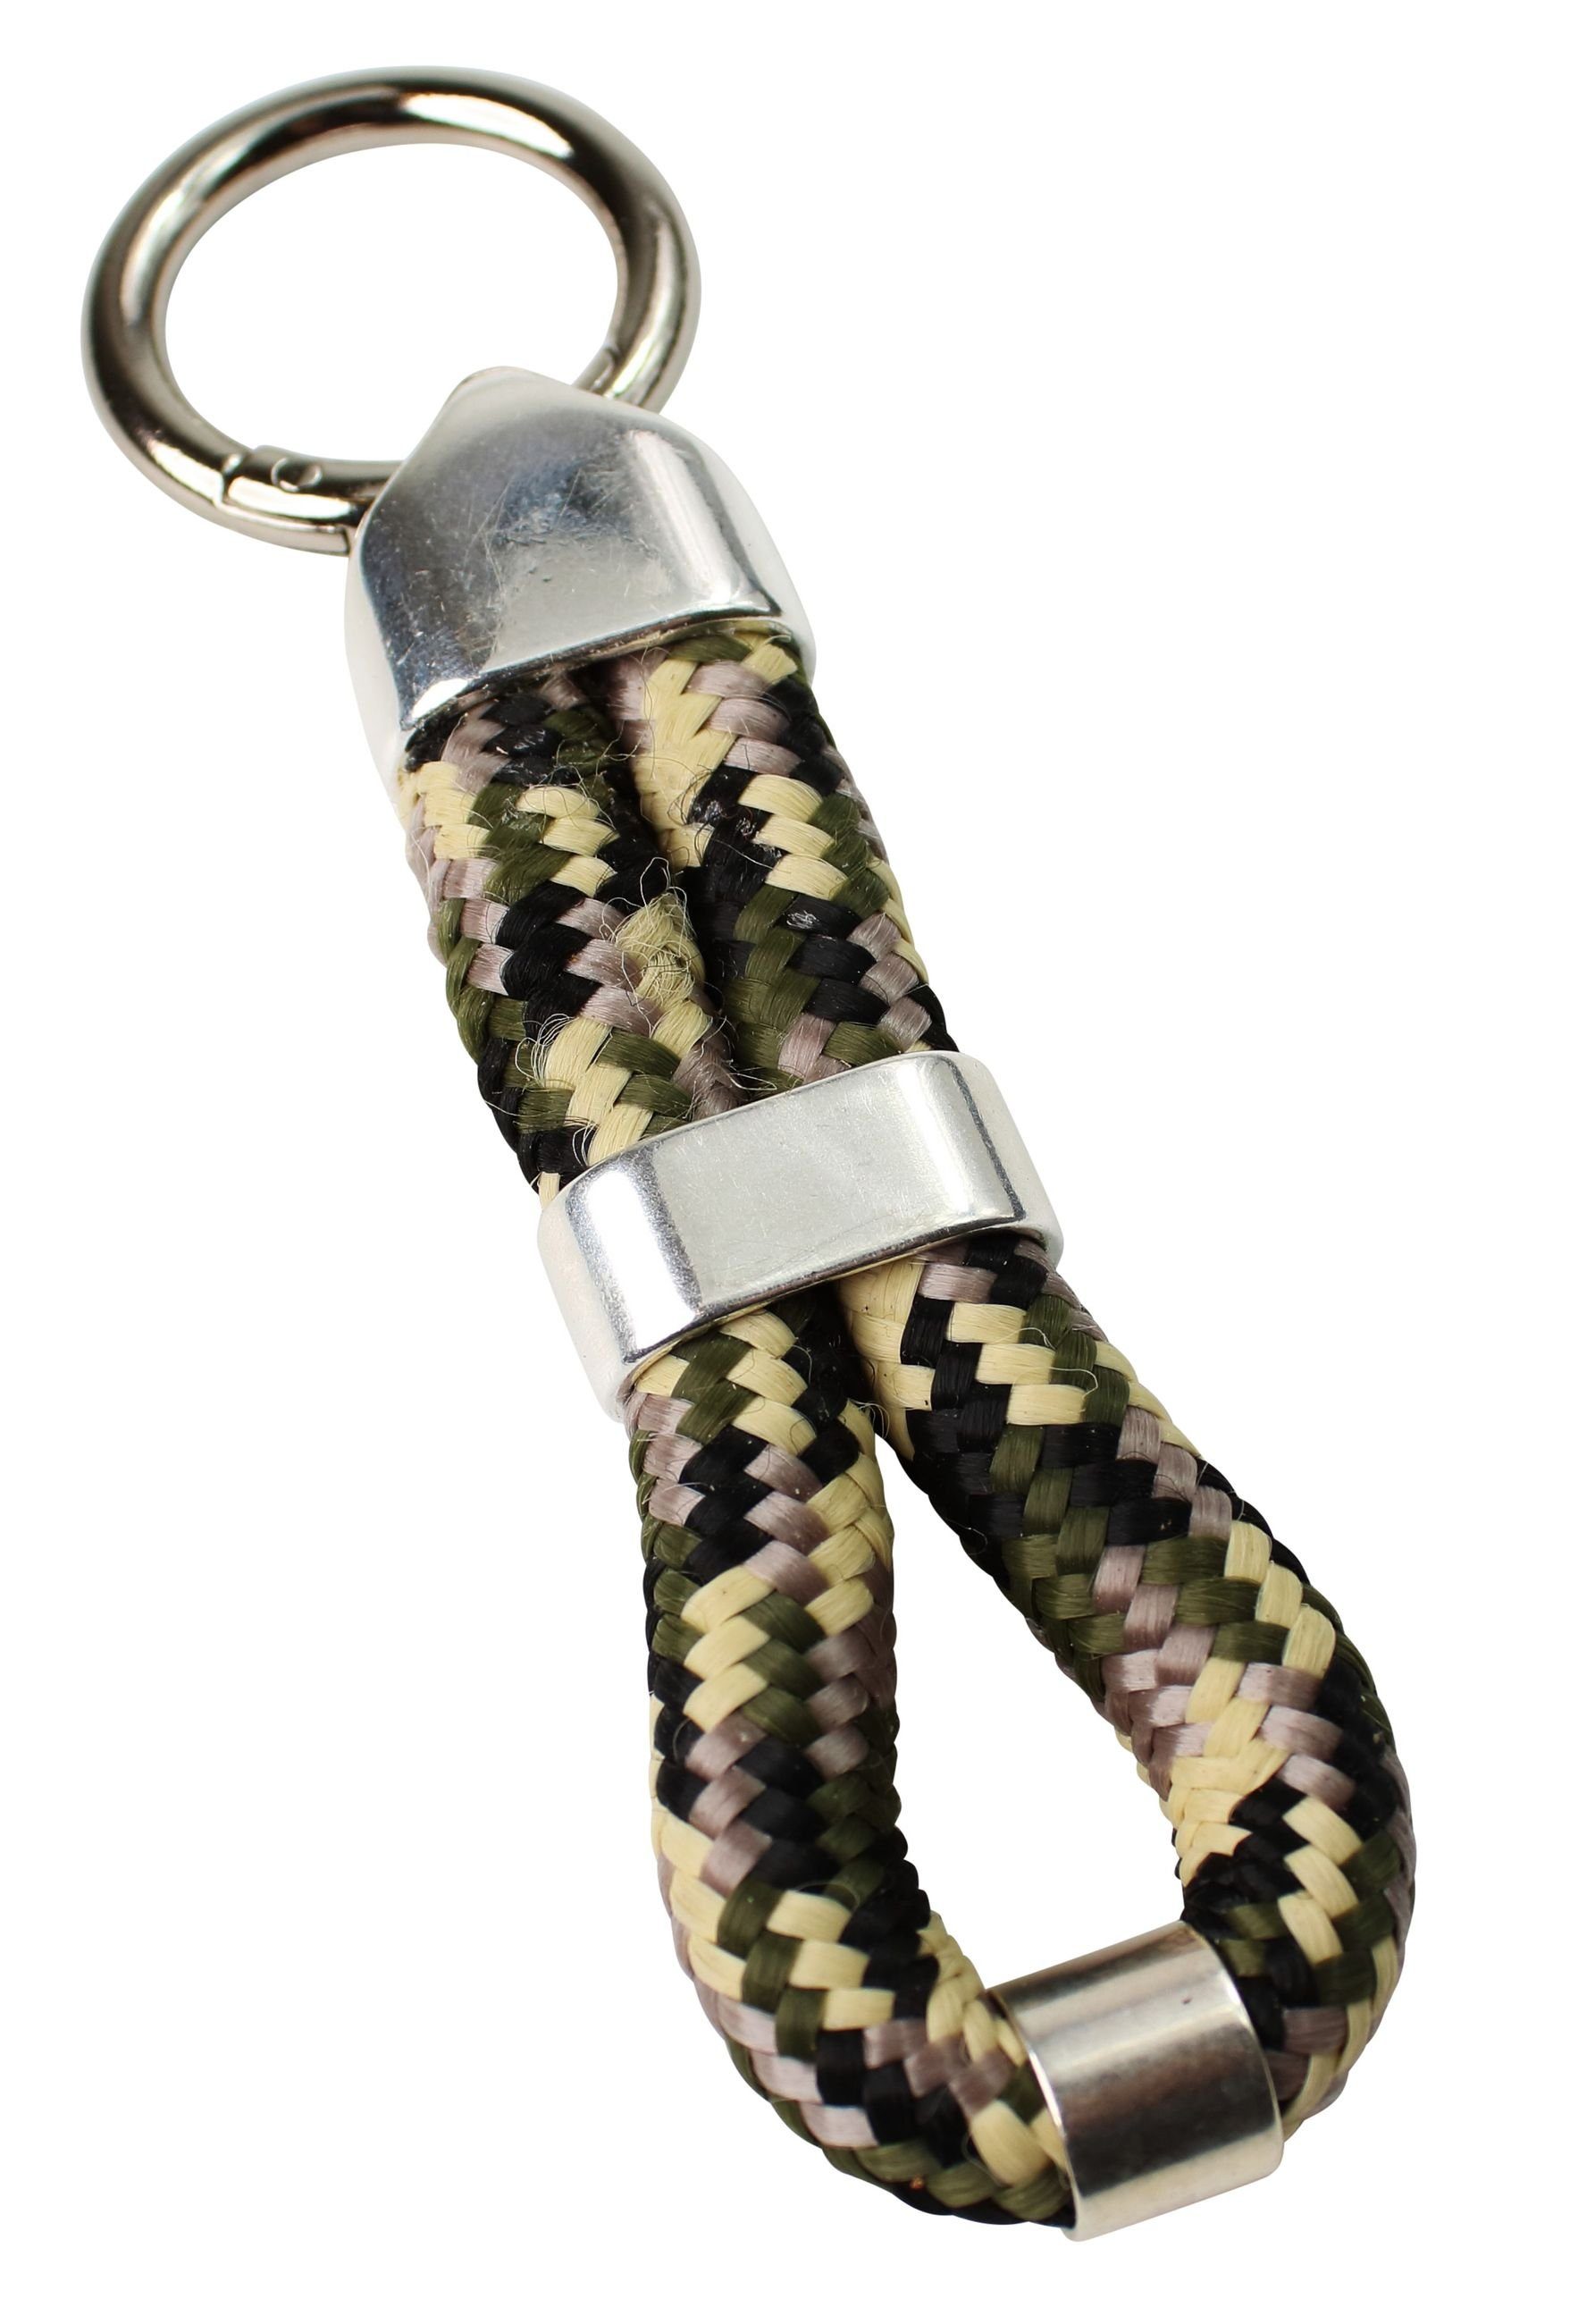 FRONHOFER Schlüsselanhänger 18841, Schlüsselanhänger mit softem Seil in tollen Farben und Zierteilen Khaki